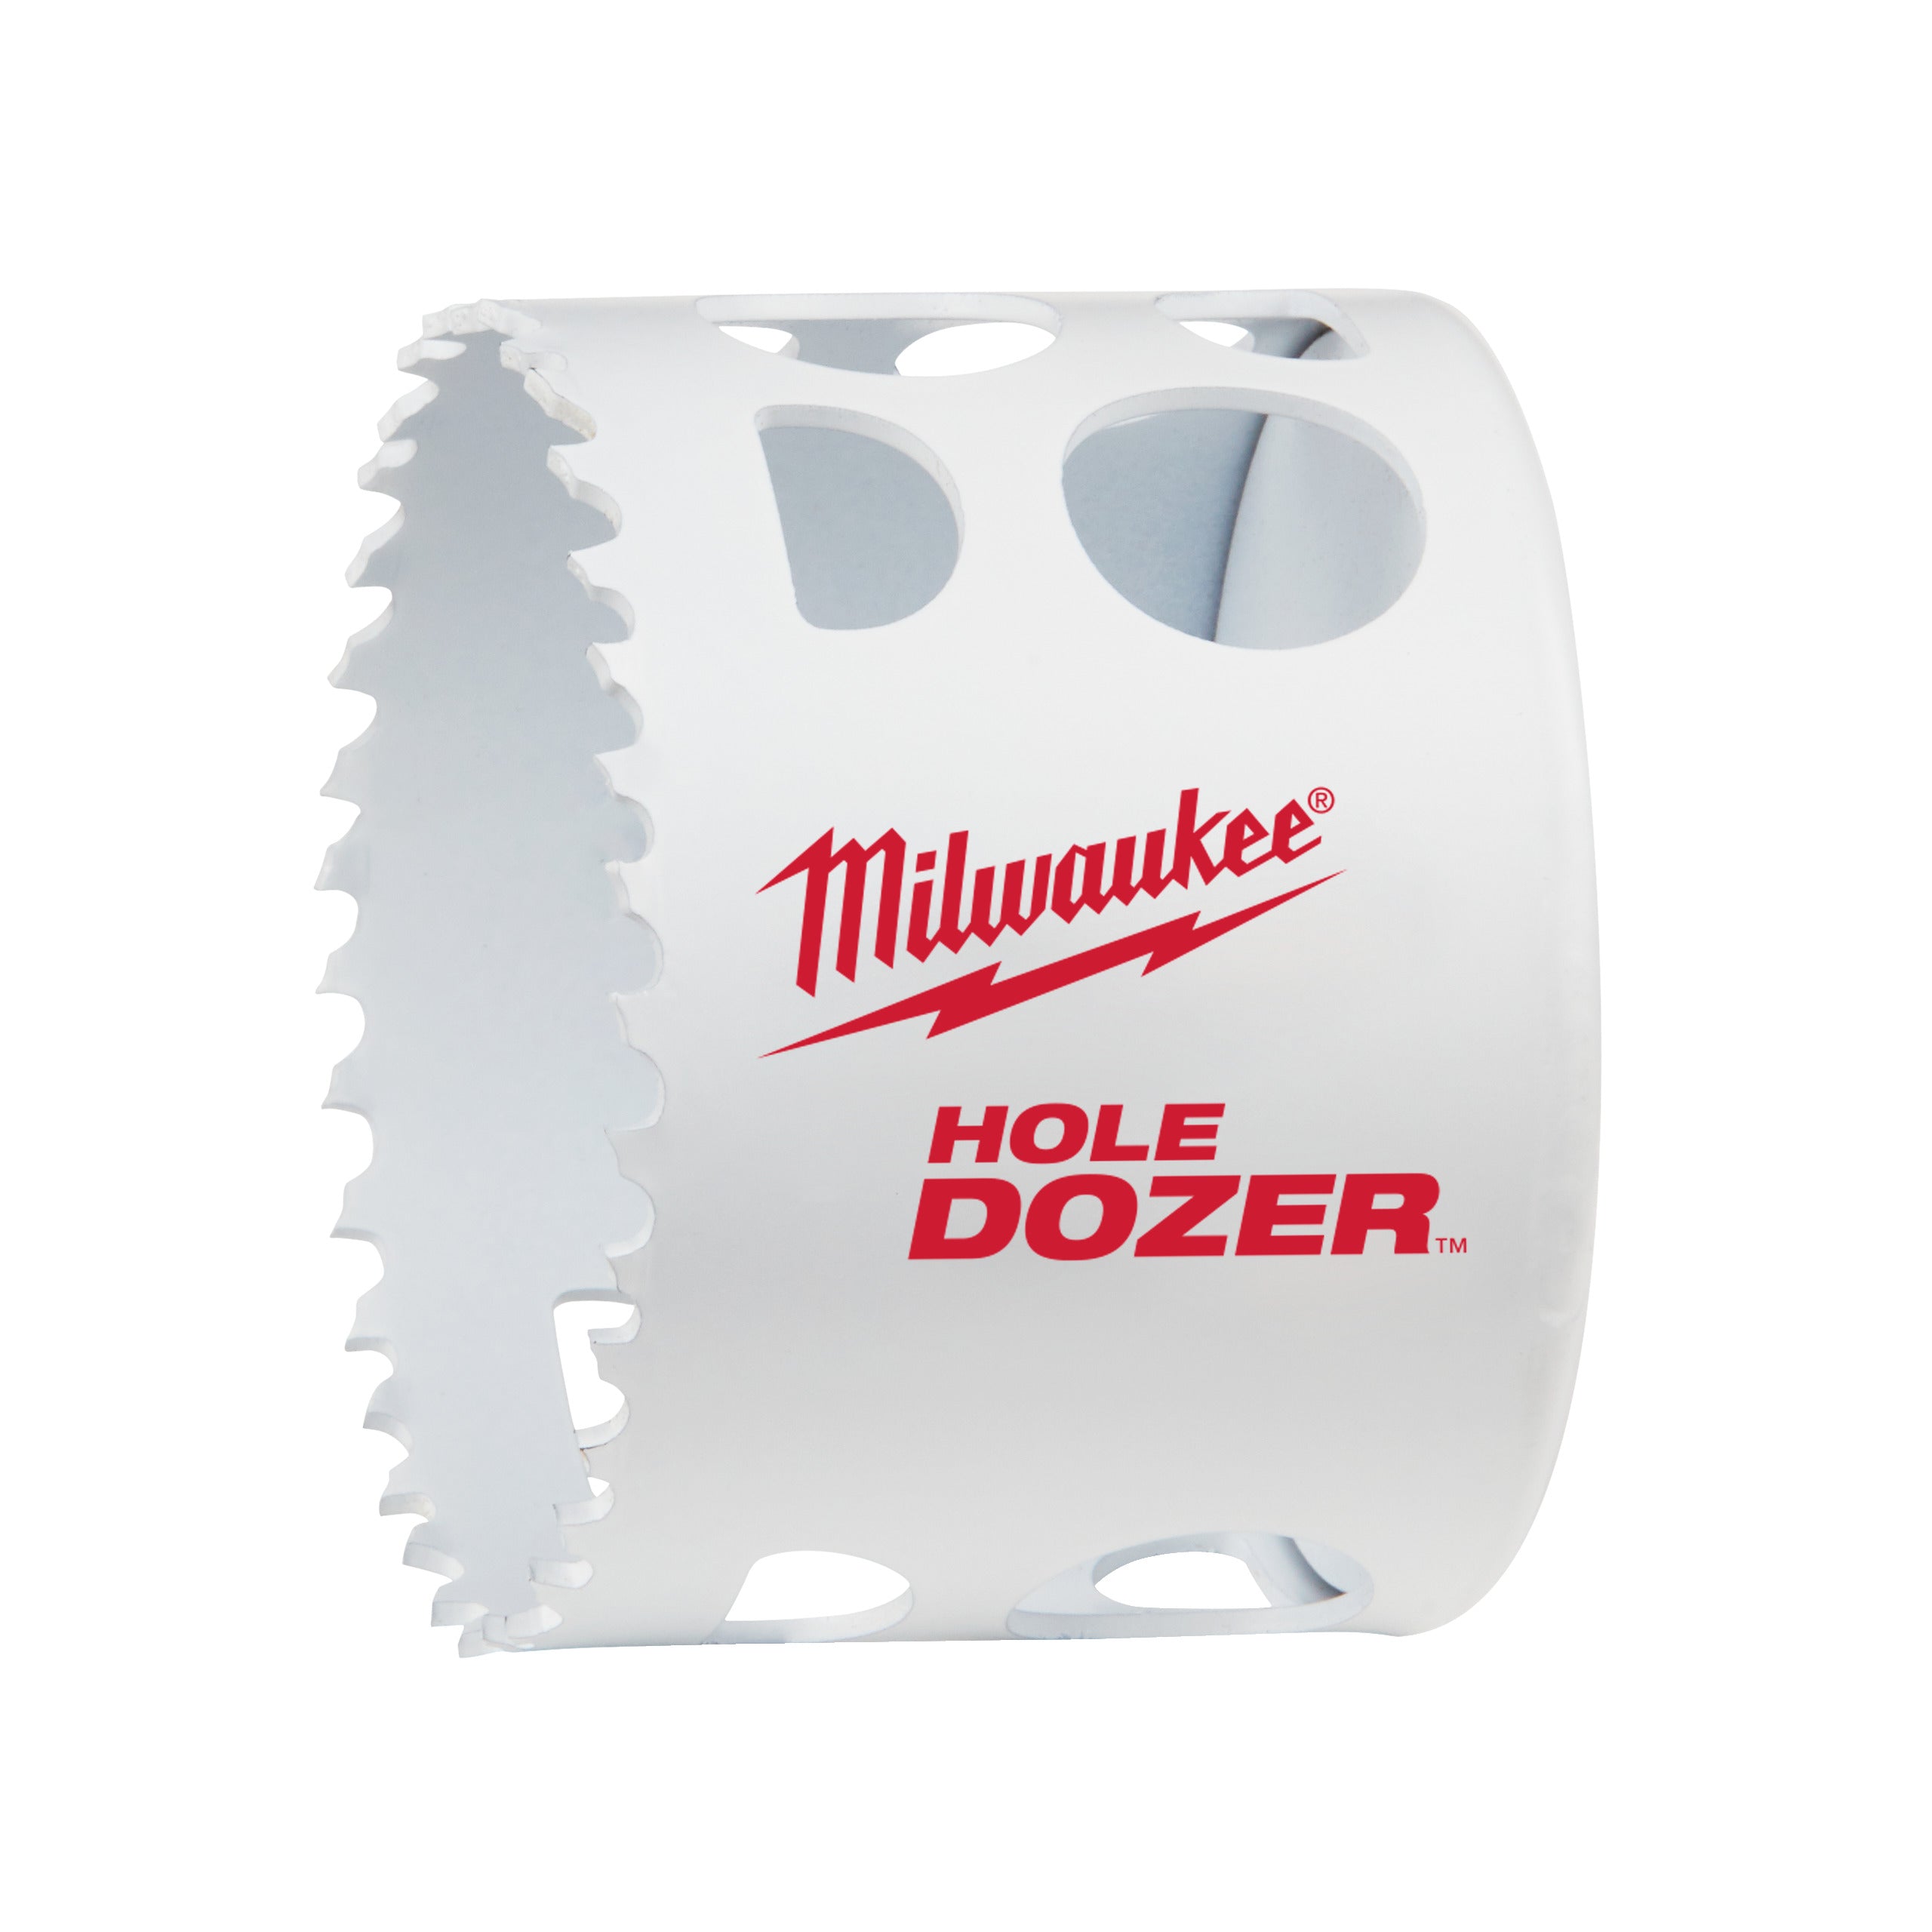 Carotă Milwaukee HOLE DOZER™ bi-metal Ø65 mm 49560153